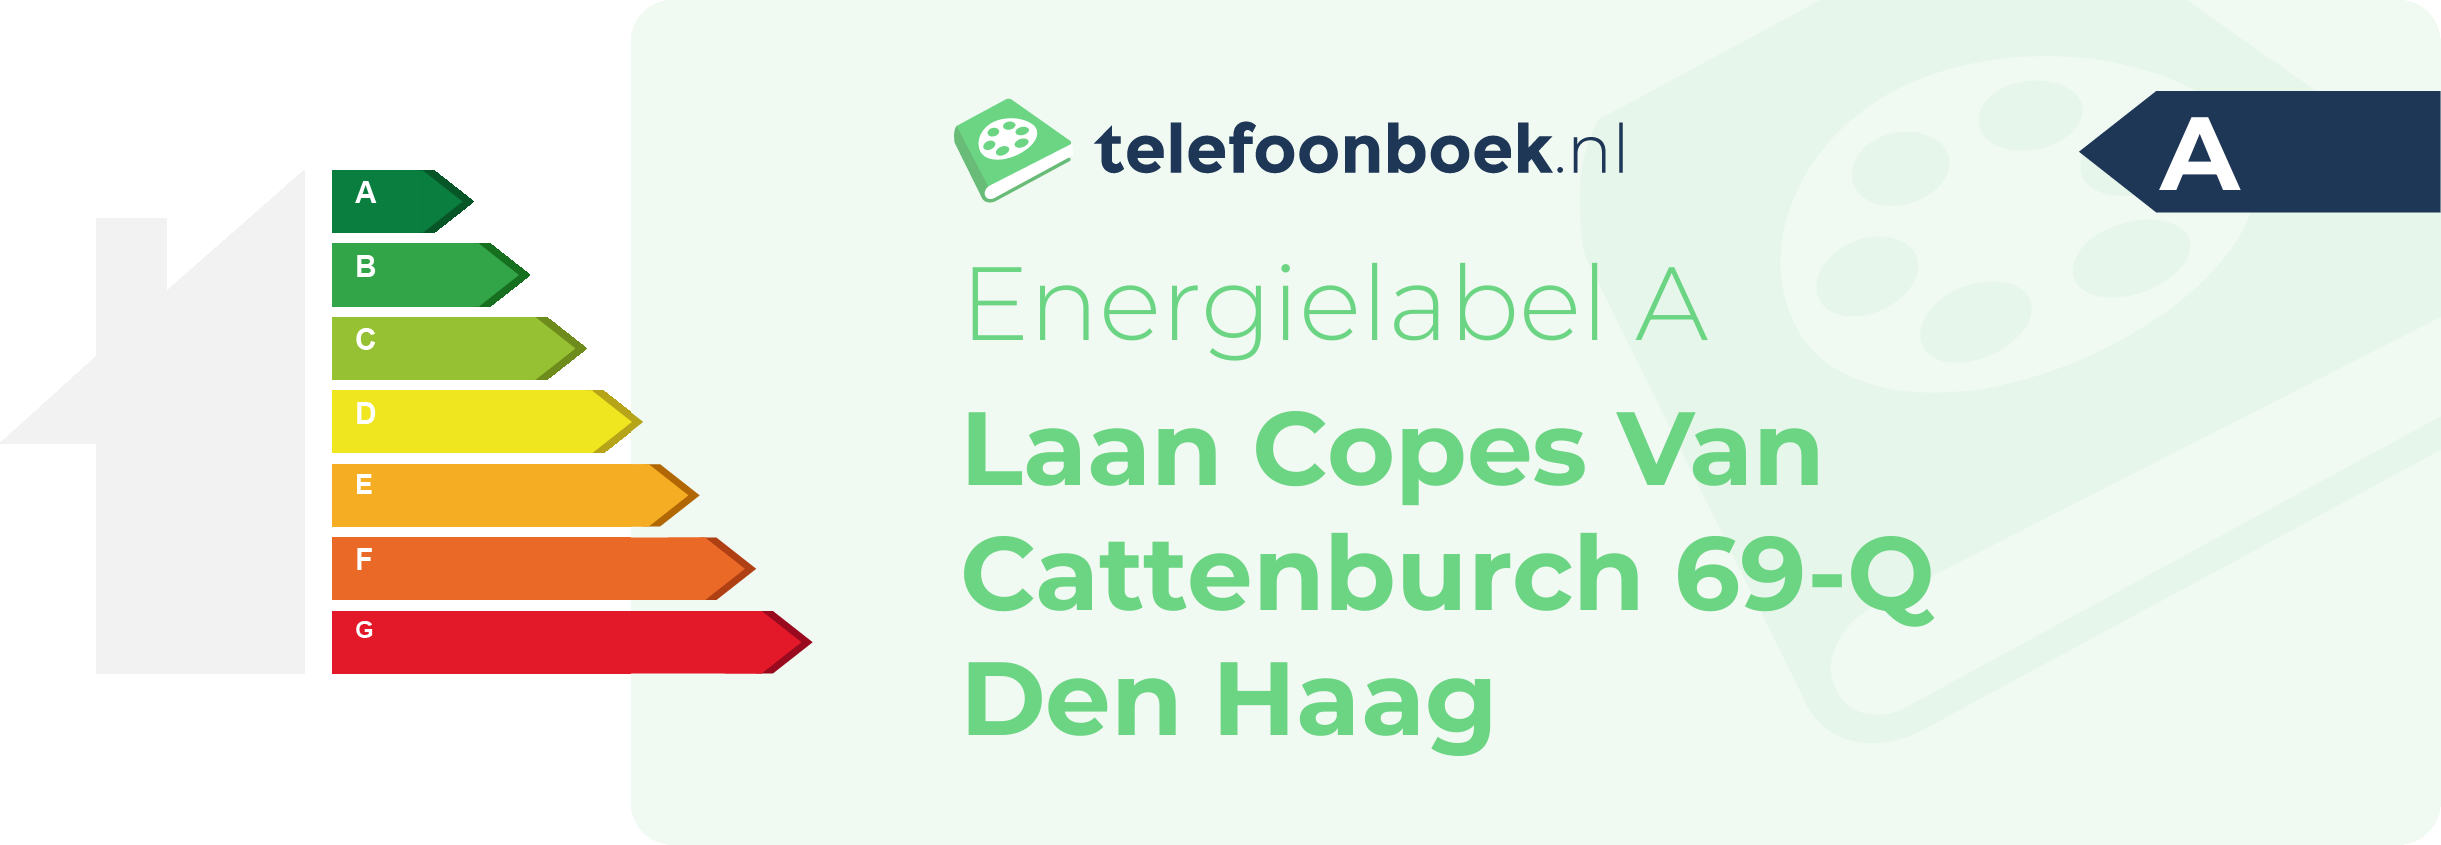 Energielabel Laan Copes Van Cattenburch 69-Q Den Haag